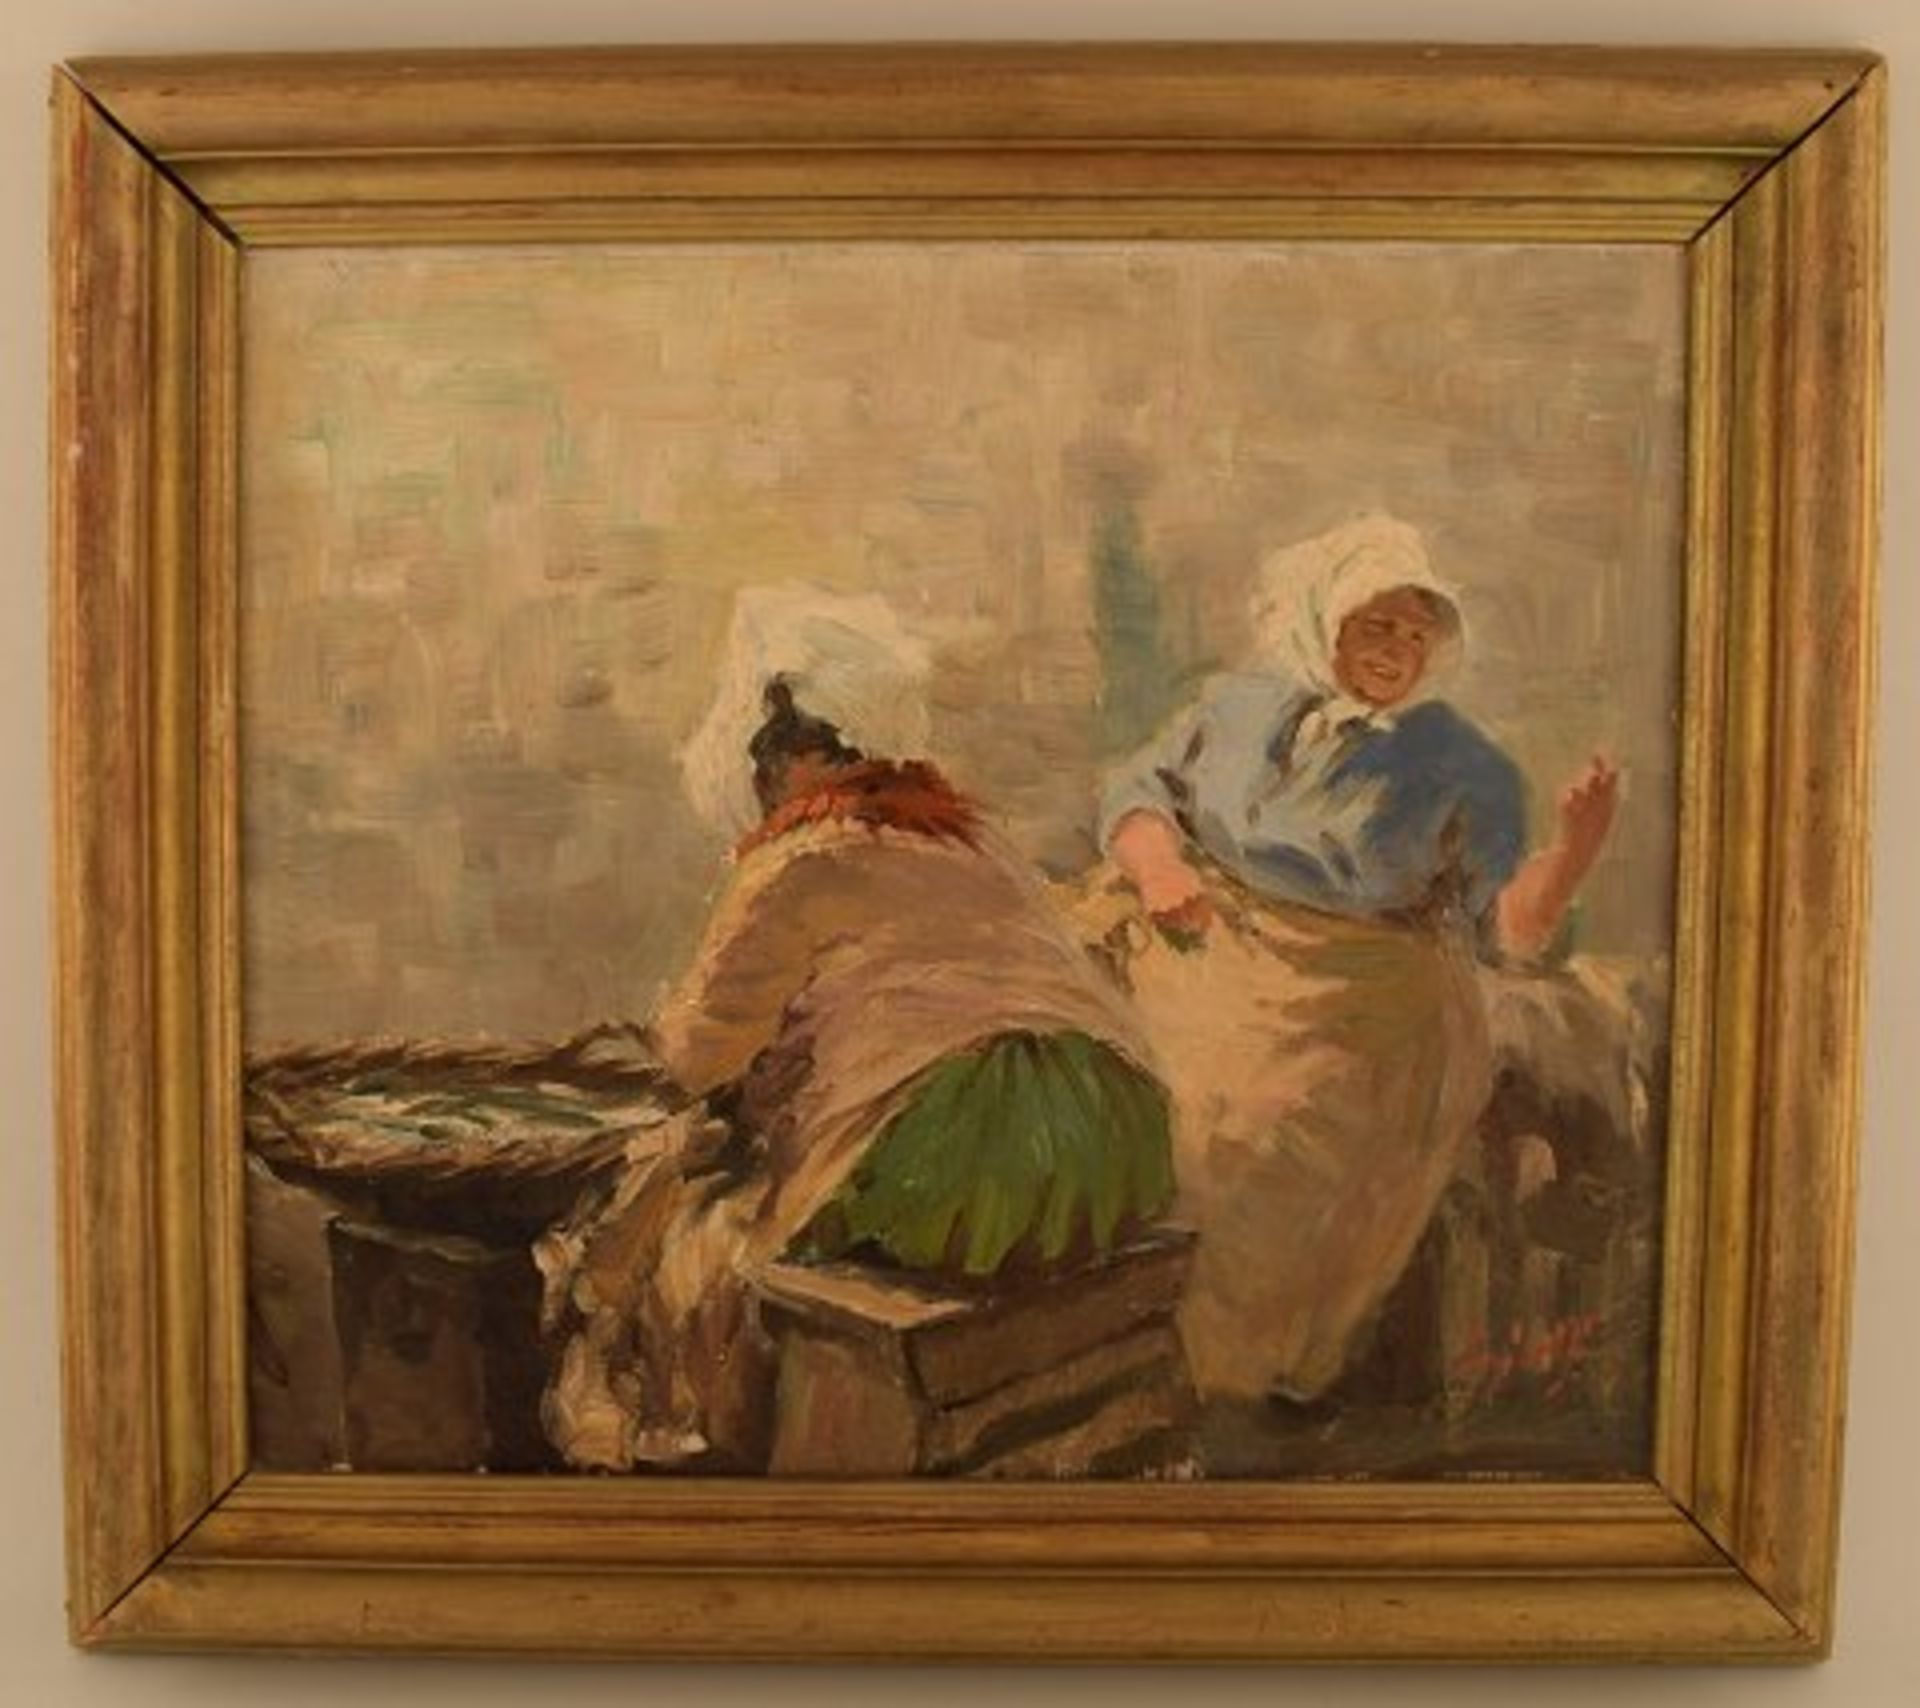 S. C. Bjulf (1890-1958). Fischverkäuferinnen in Kopenhagen. Öl/Lw. Sig. Maß ca. 37 cm. x 32 cm.